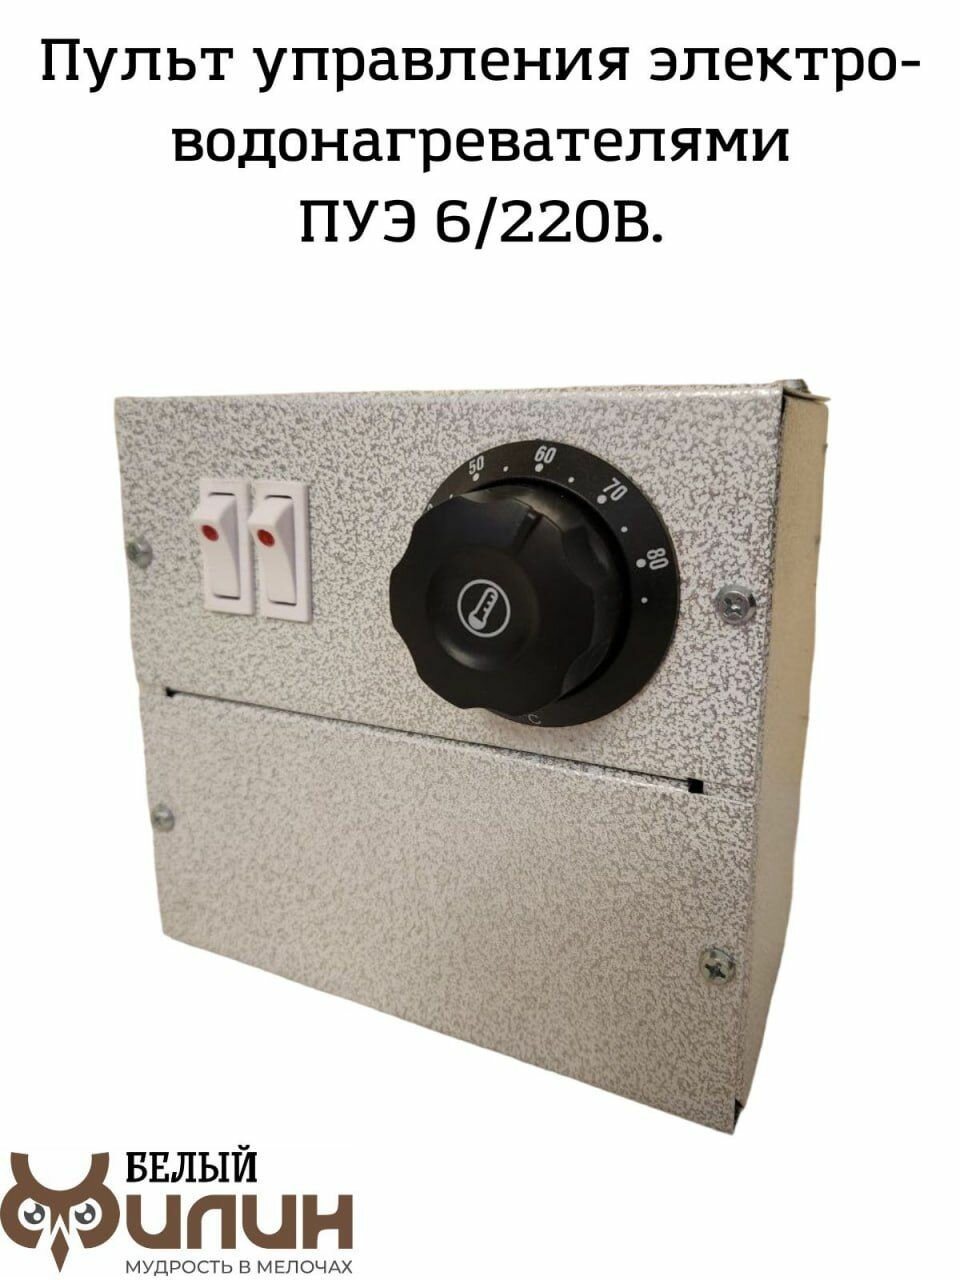 Пульт управления электроводонагревателями, блок автоматики для электрокотлов ПУЭ-6 220В